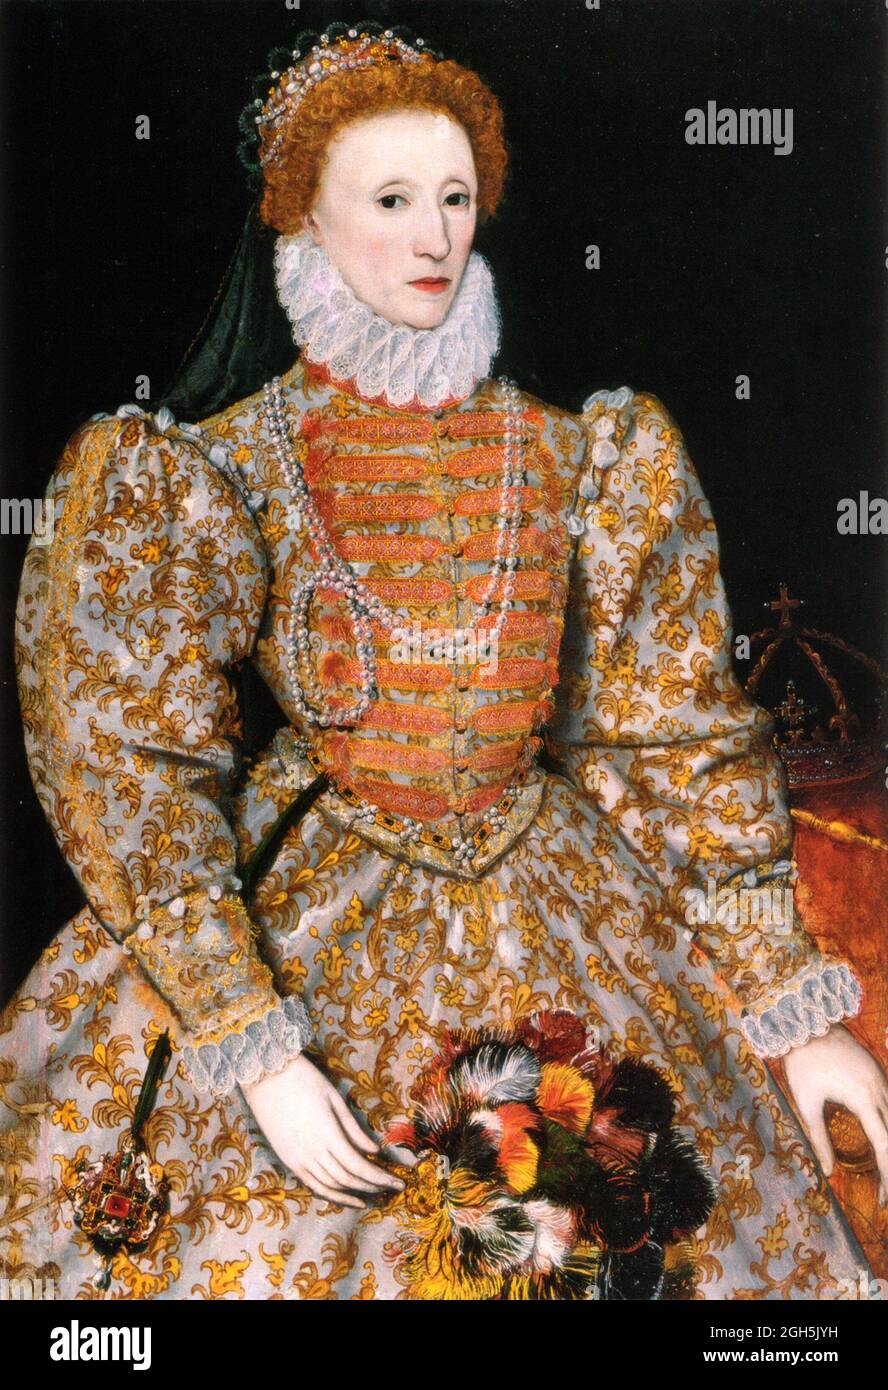 Un ritratto della regina Elisabetta i che fu Regina d'Inghilterra dal 1558 al 1603 Foto Stock